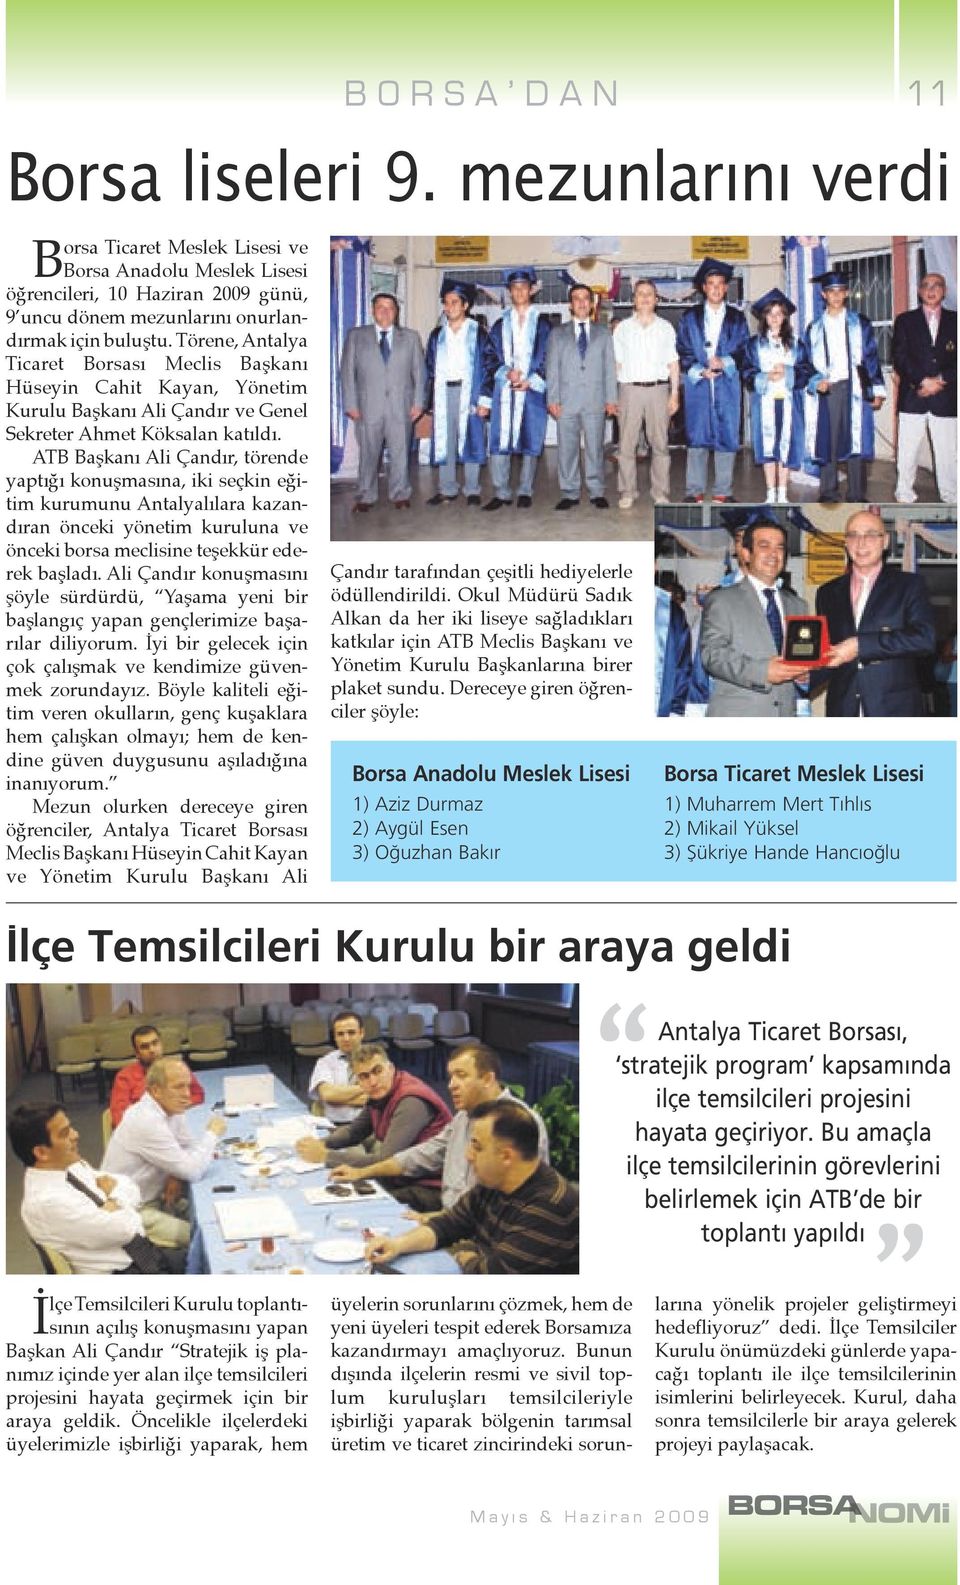 ATB Başkanı Ali Çandır, törende yaptığı konuşmasına, iki seçkin eğitim kurumunu Antalyalılara kazandıran önceki yönetim kuruluna ve önceki borsa meclisine teşekkür ederek başladı.